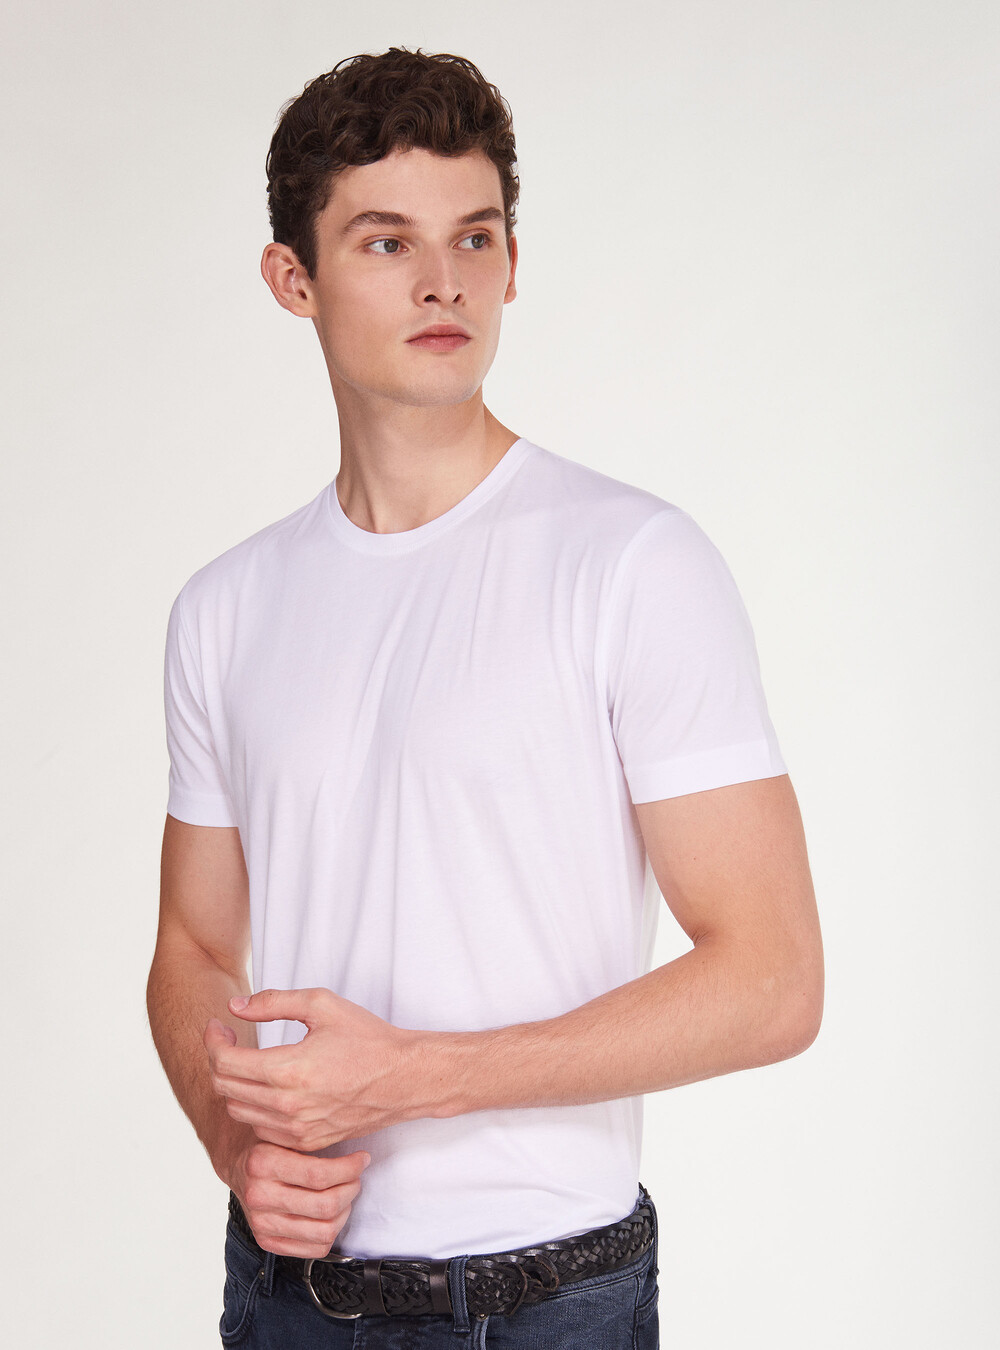 Supima cotton jersey t-shirt | GutteridgeEU | Men's T-shirt